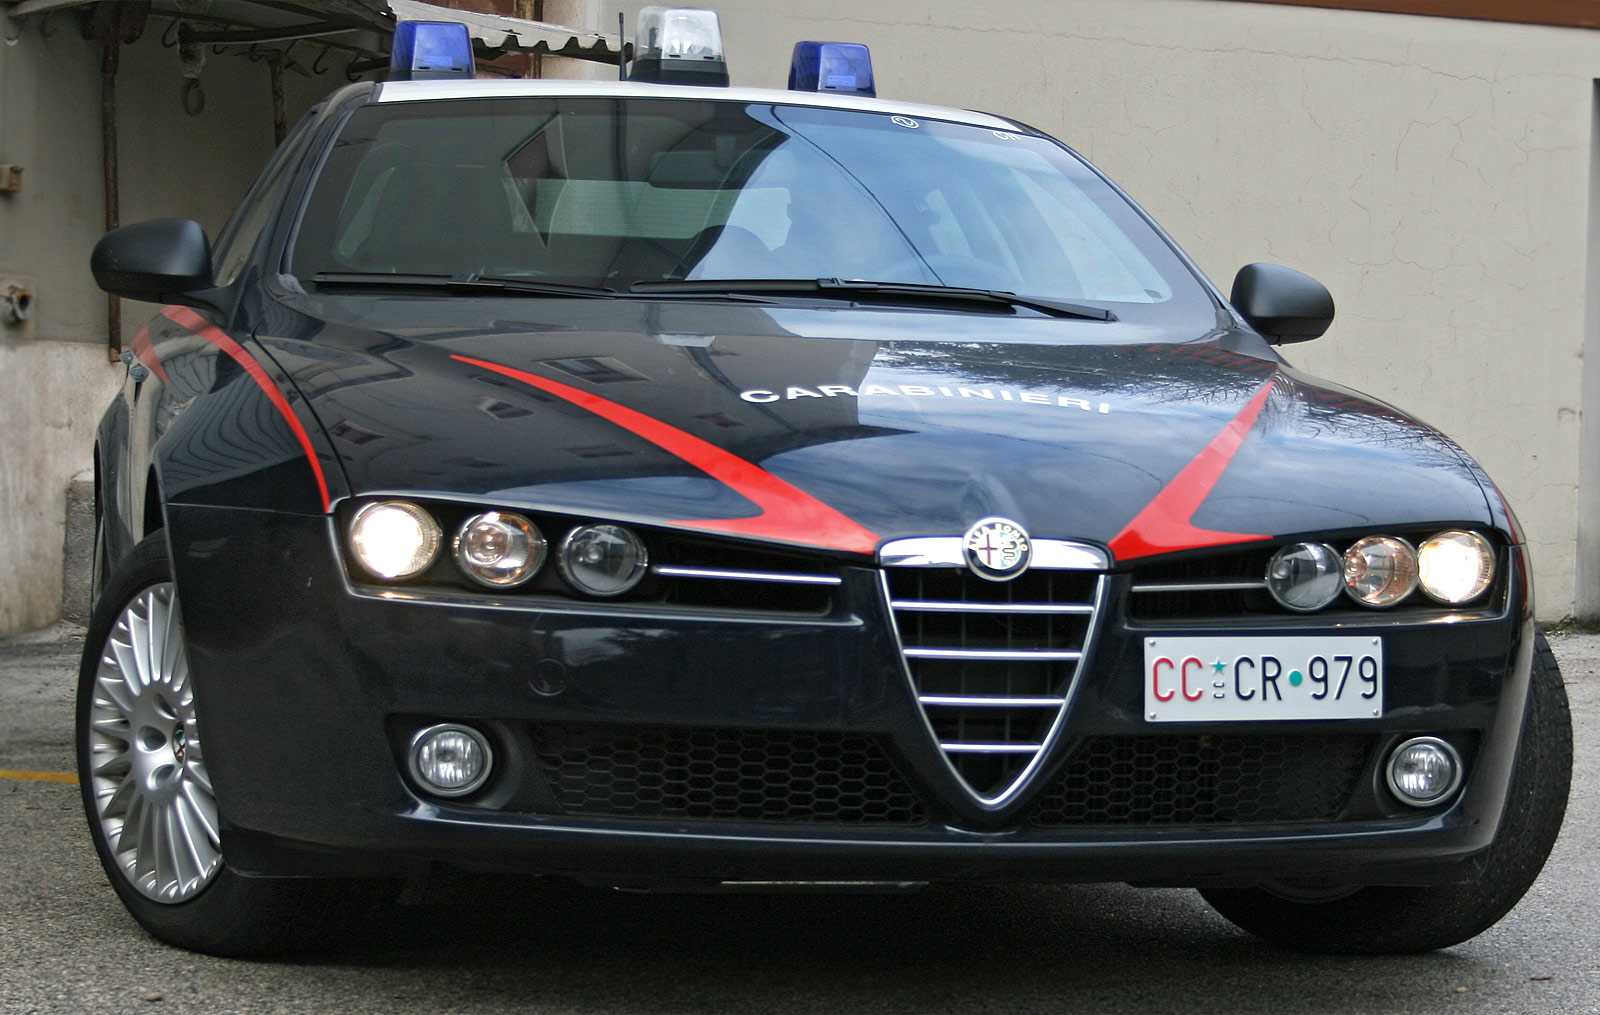 Forlì, picchia la compagna e aggredisce i Carabinieri: arrestato